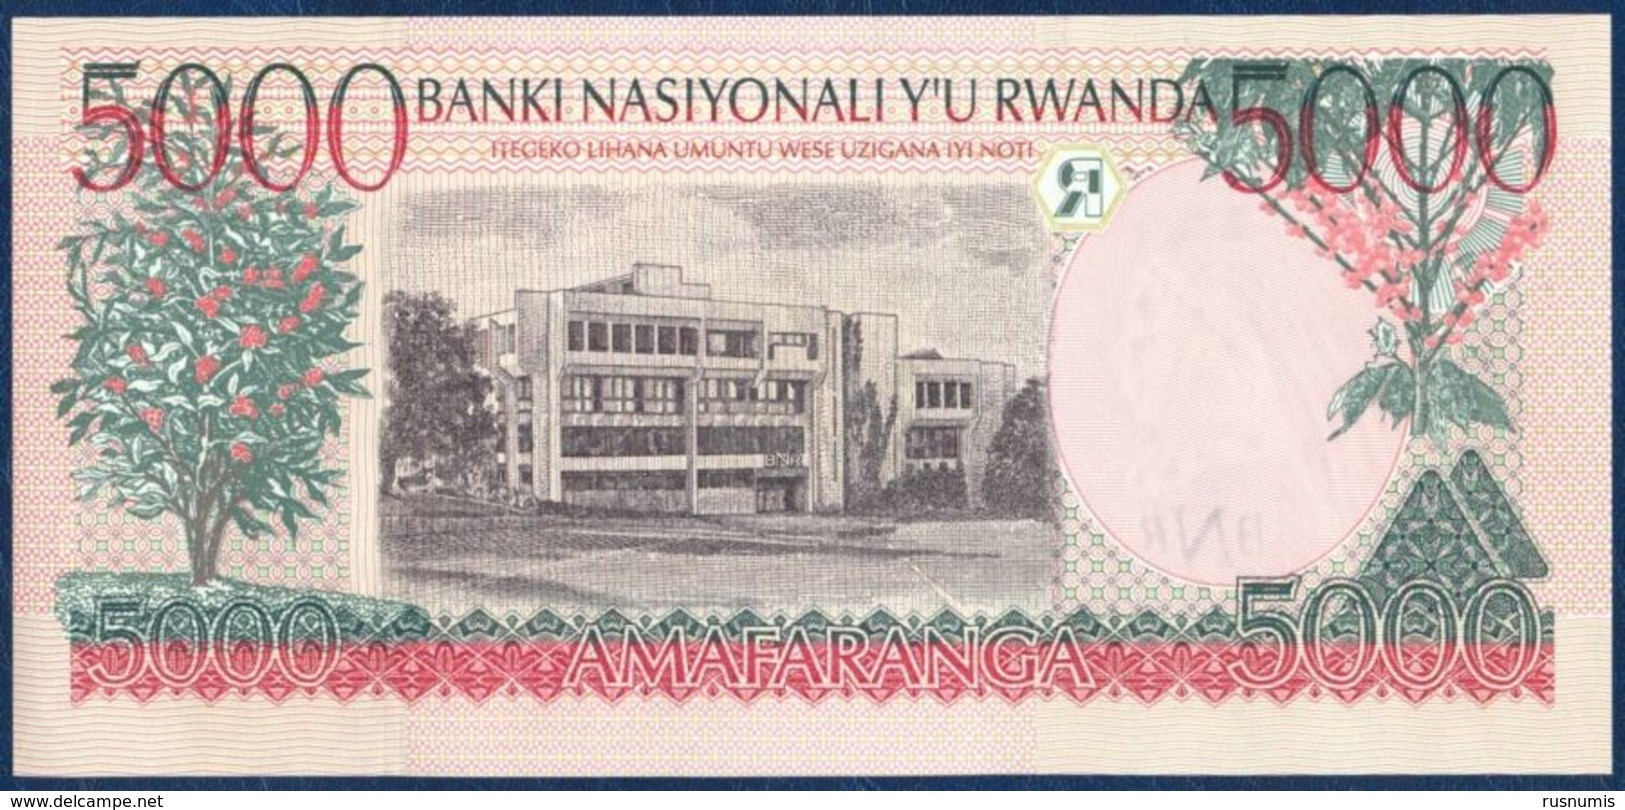 RWANDA 5000 FRANCS P-28b Dancers - National Bank Of Rwanda Building, Kigali 1998 UNC - Ruanda